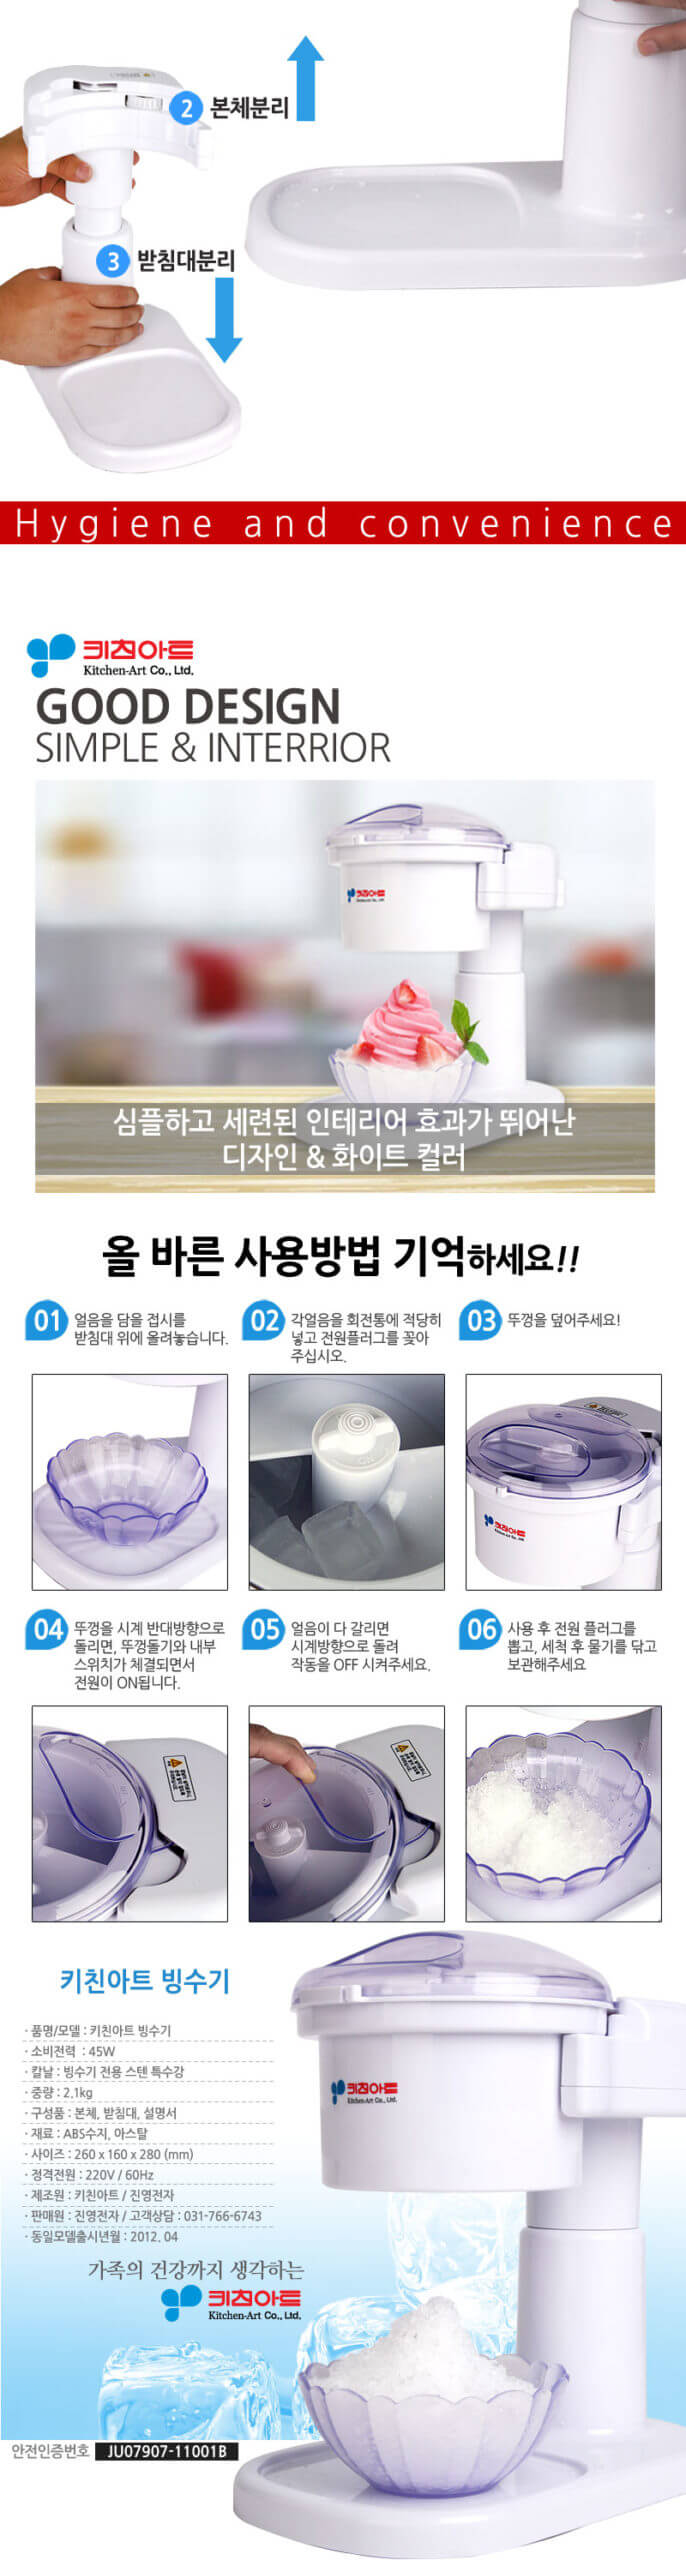 韓國食品-Kitchen-Art Electric Ice Shaver (Bingsu)